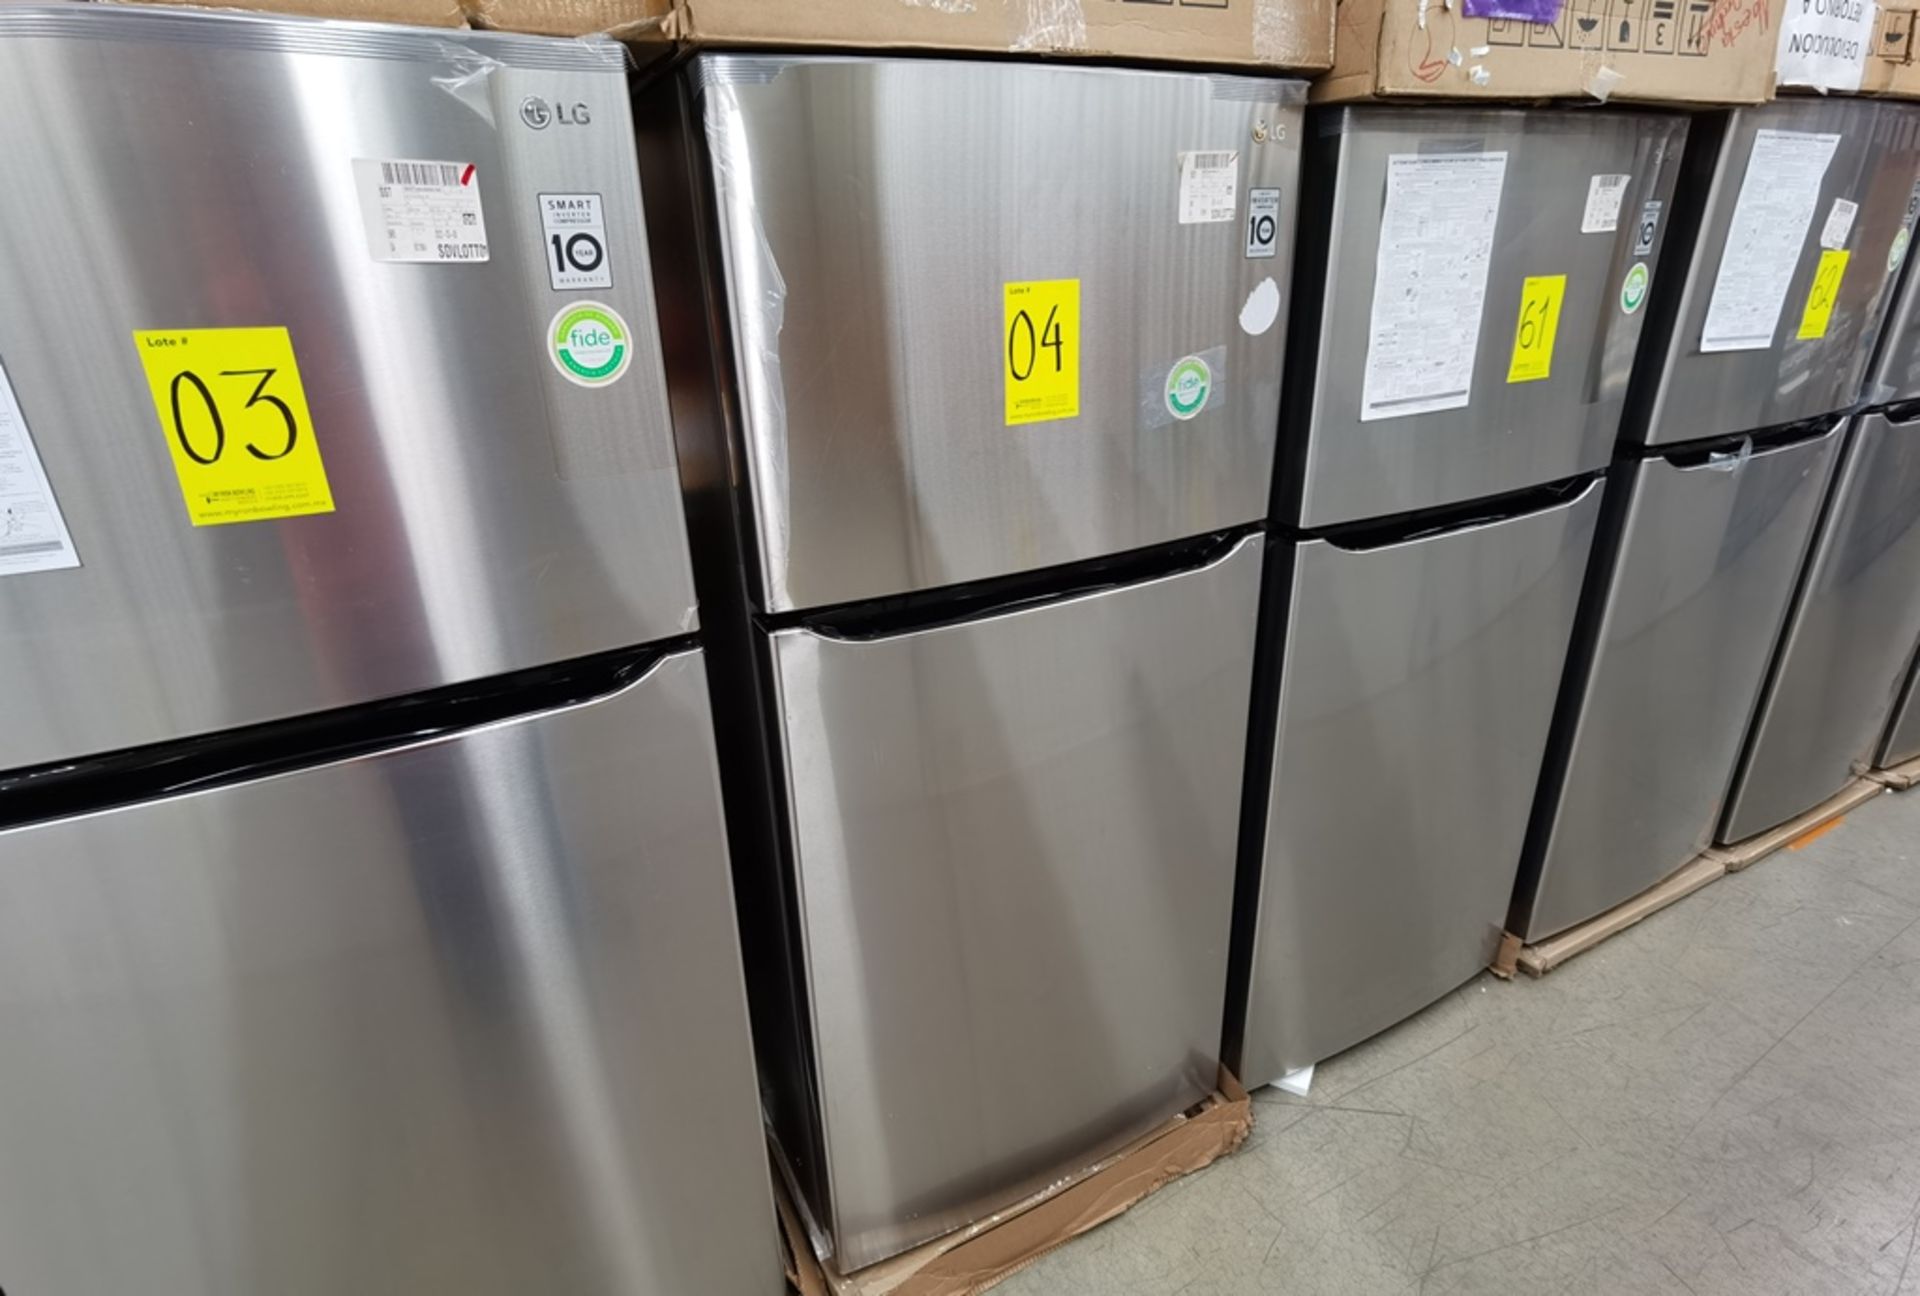 1 Refrigerador Marca LG, Modelo LT57BPSX, Serie 203MRTT3A865, Color Gris - Image 4 of 8